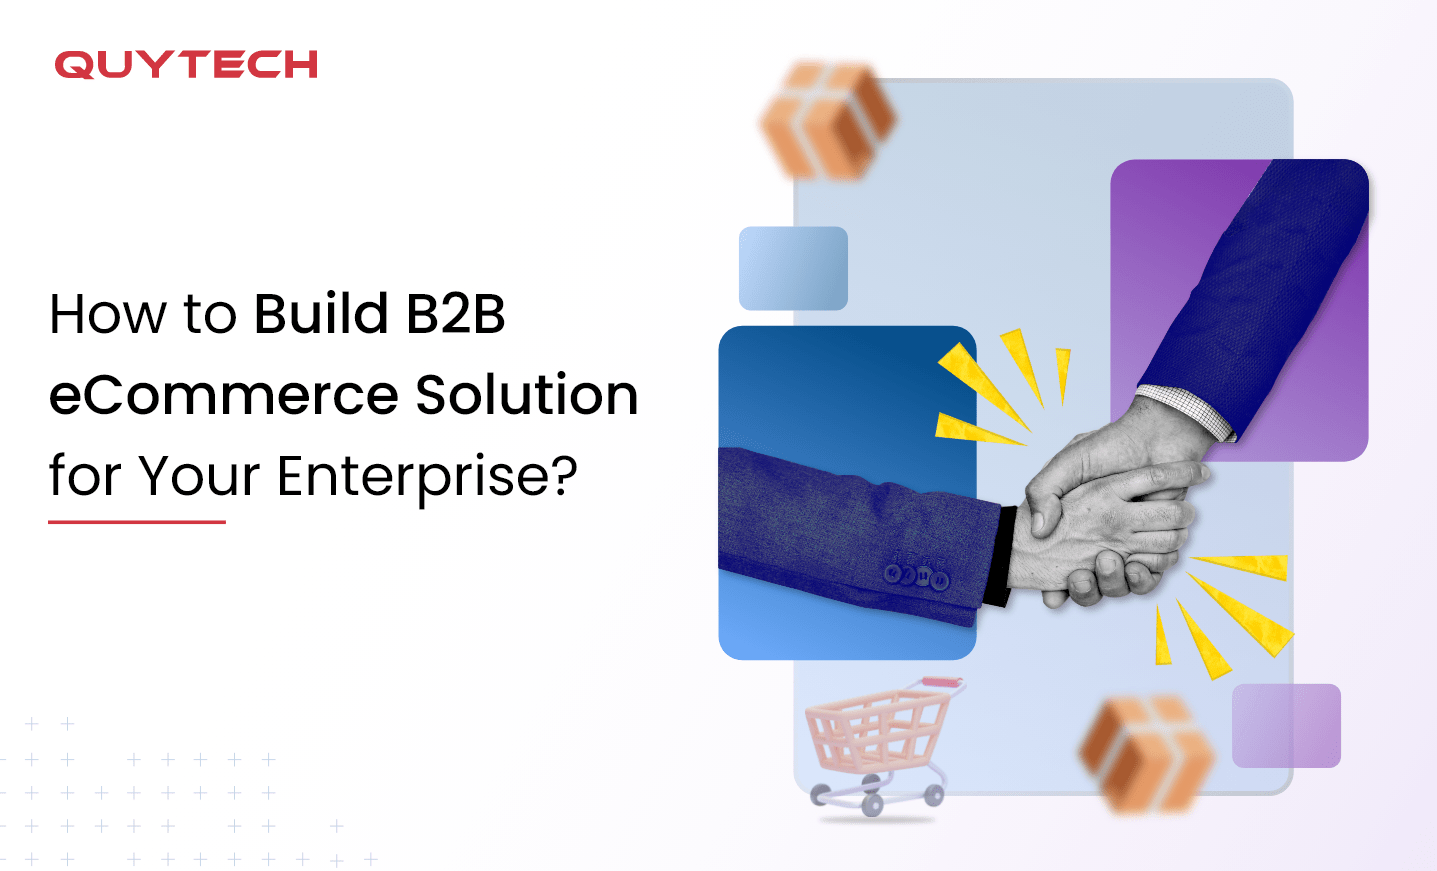 b2b ecommerce solution for enterprise